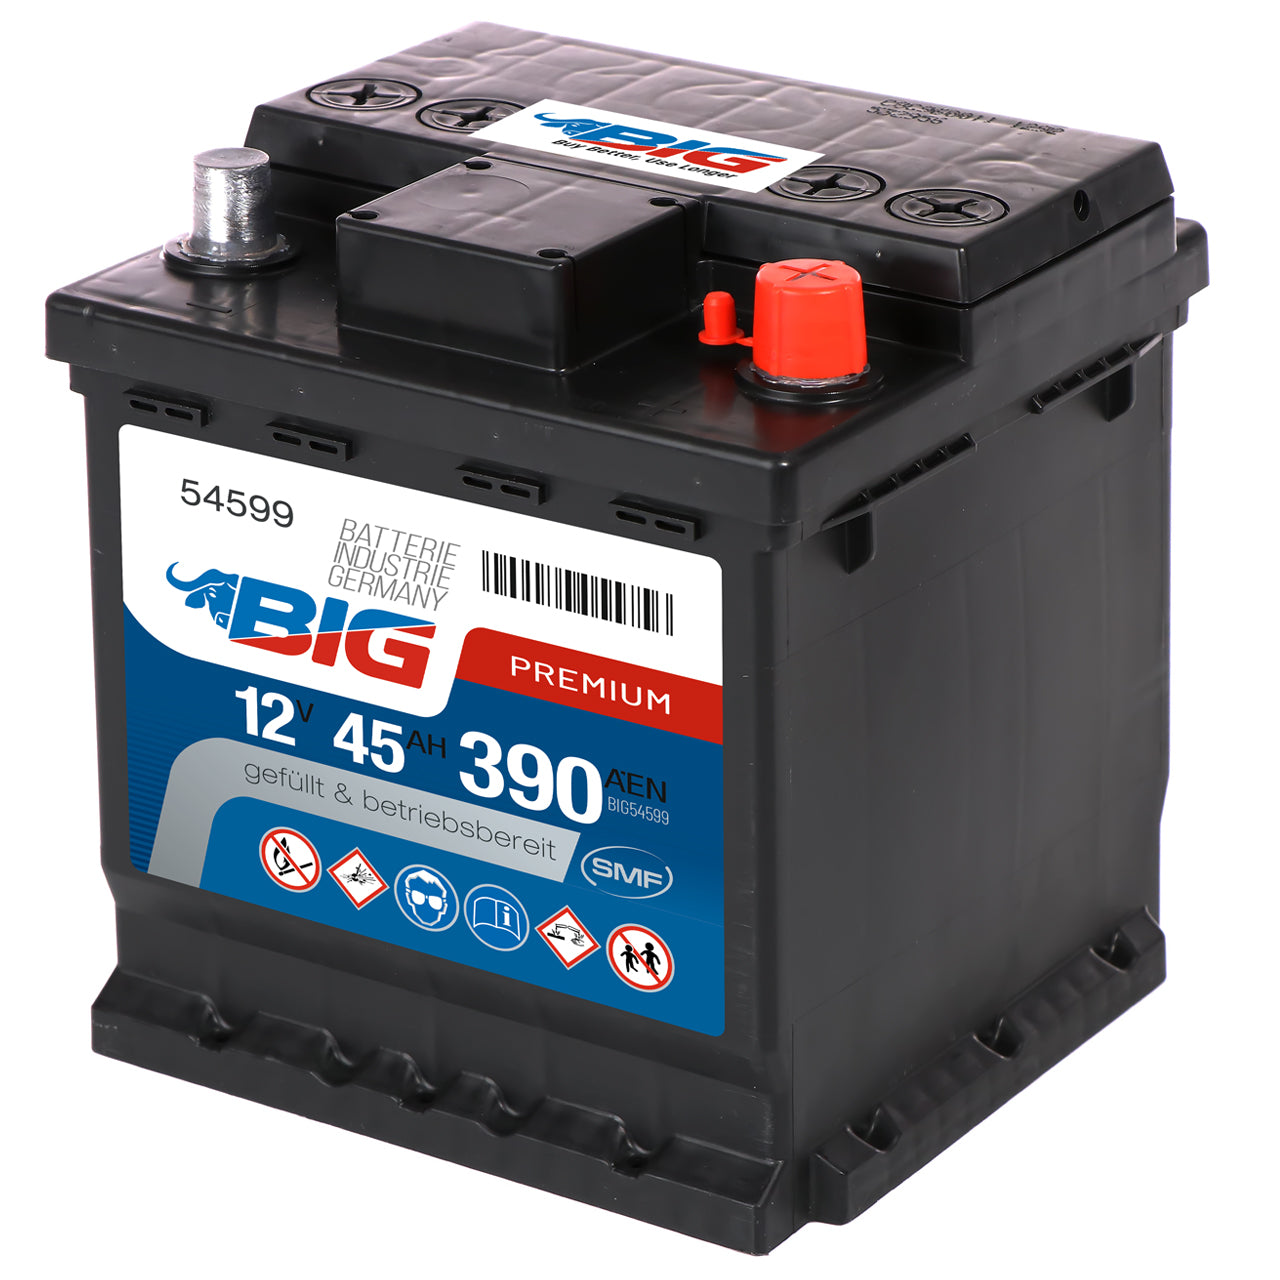 BIG FIAT Autobatterie 12V 45Ah DIN 54599